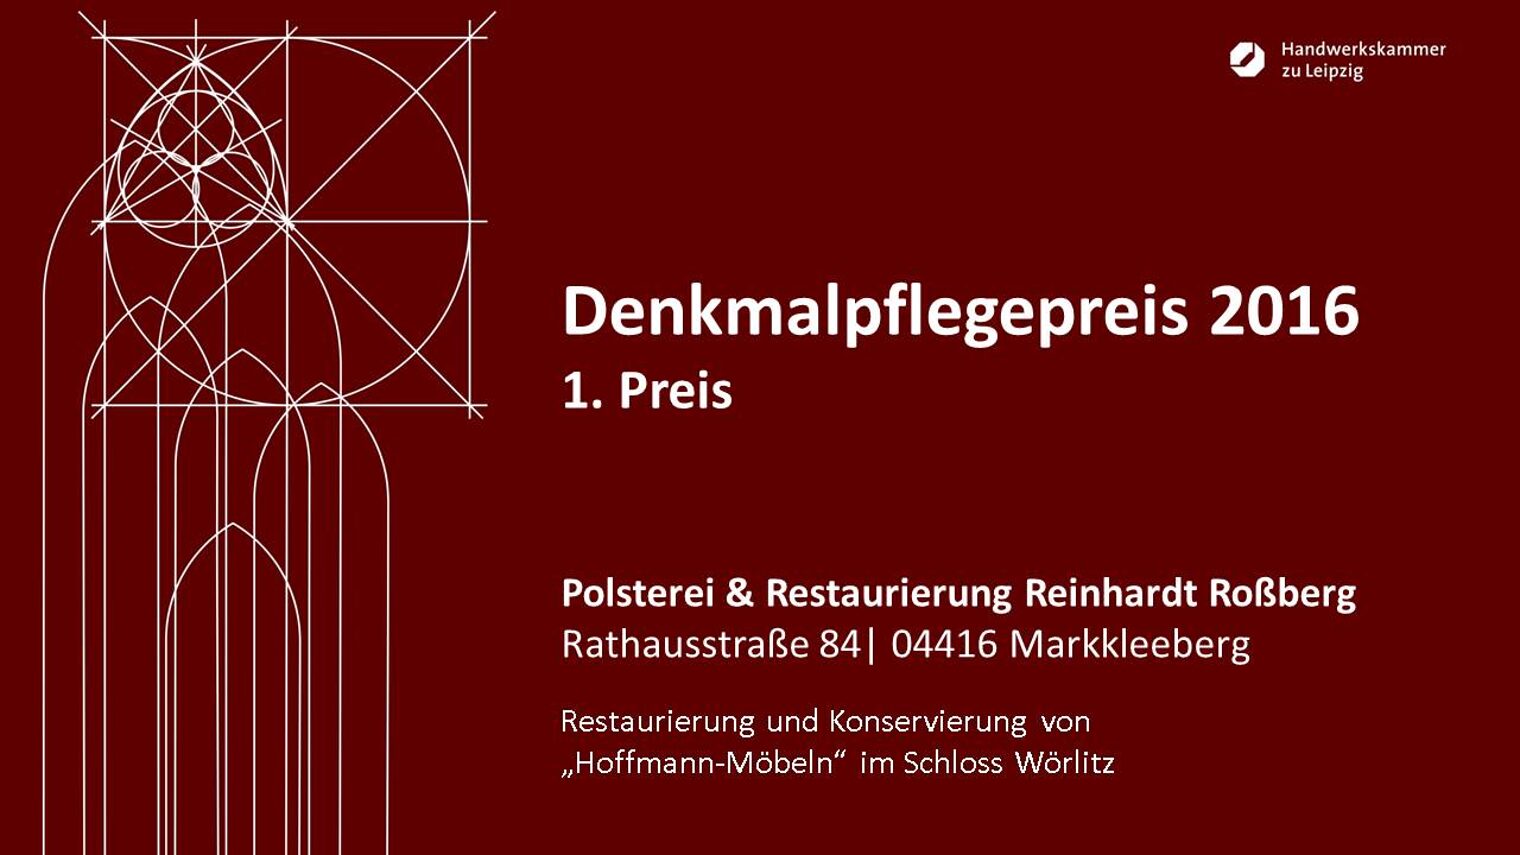 Polsterei & Restaurierung Reinhardt Roßberg: Restaurierung und Konservierung von "Hoffmann-Möbeln" im Schloss Wörlitz.